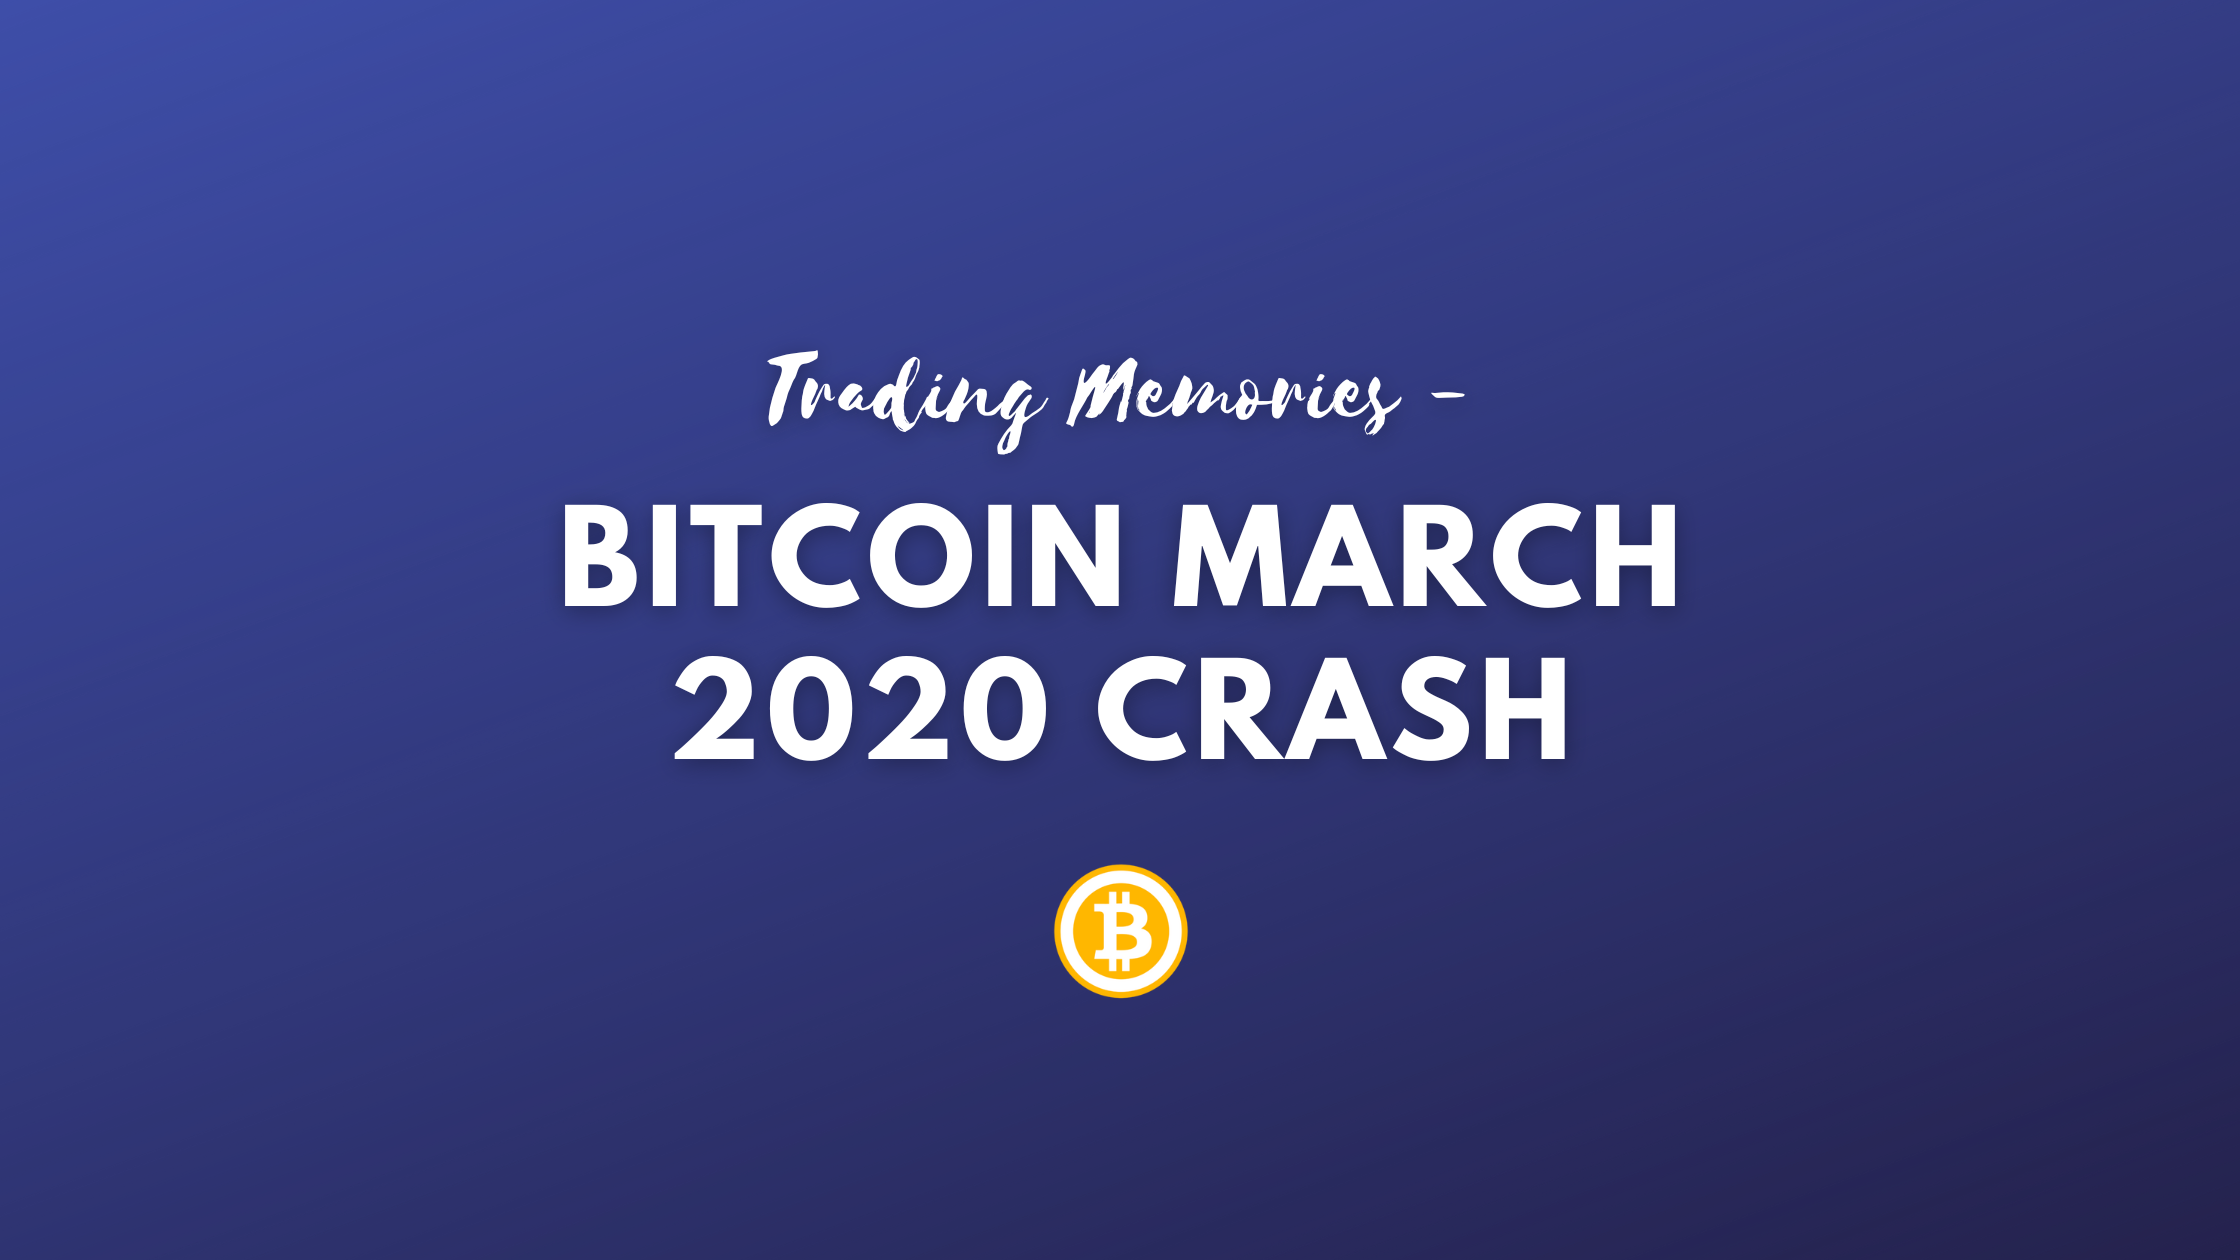 @brando28/trading-memories-bitcoin-march-2020-crash